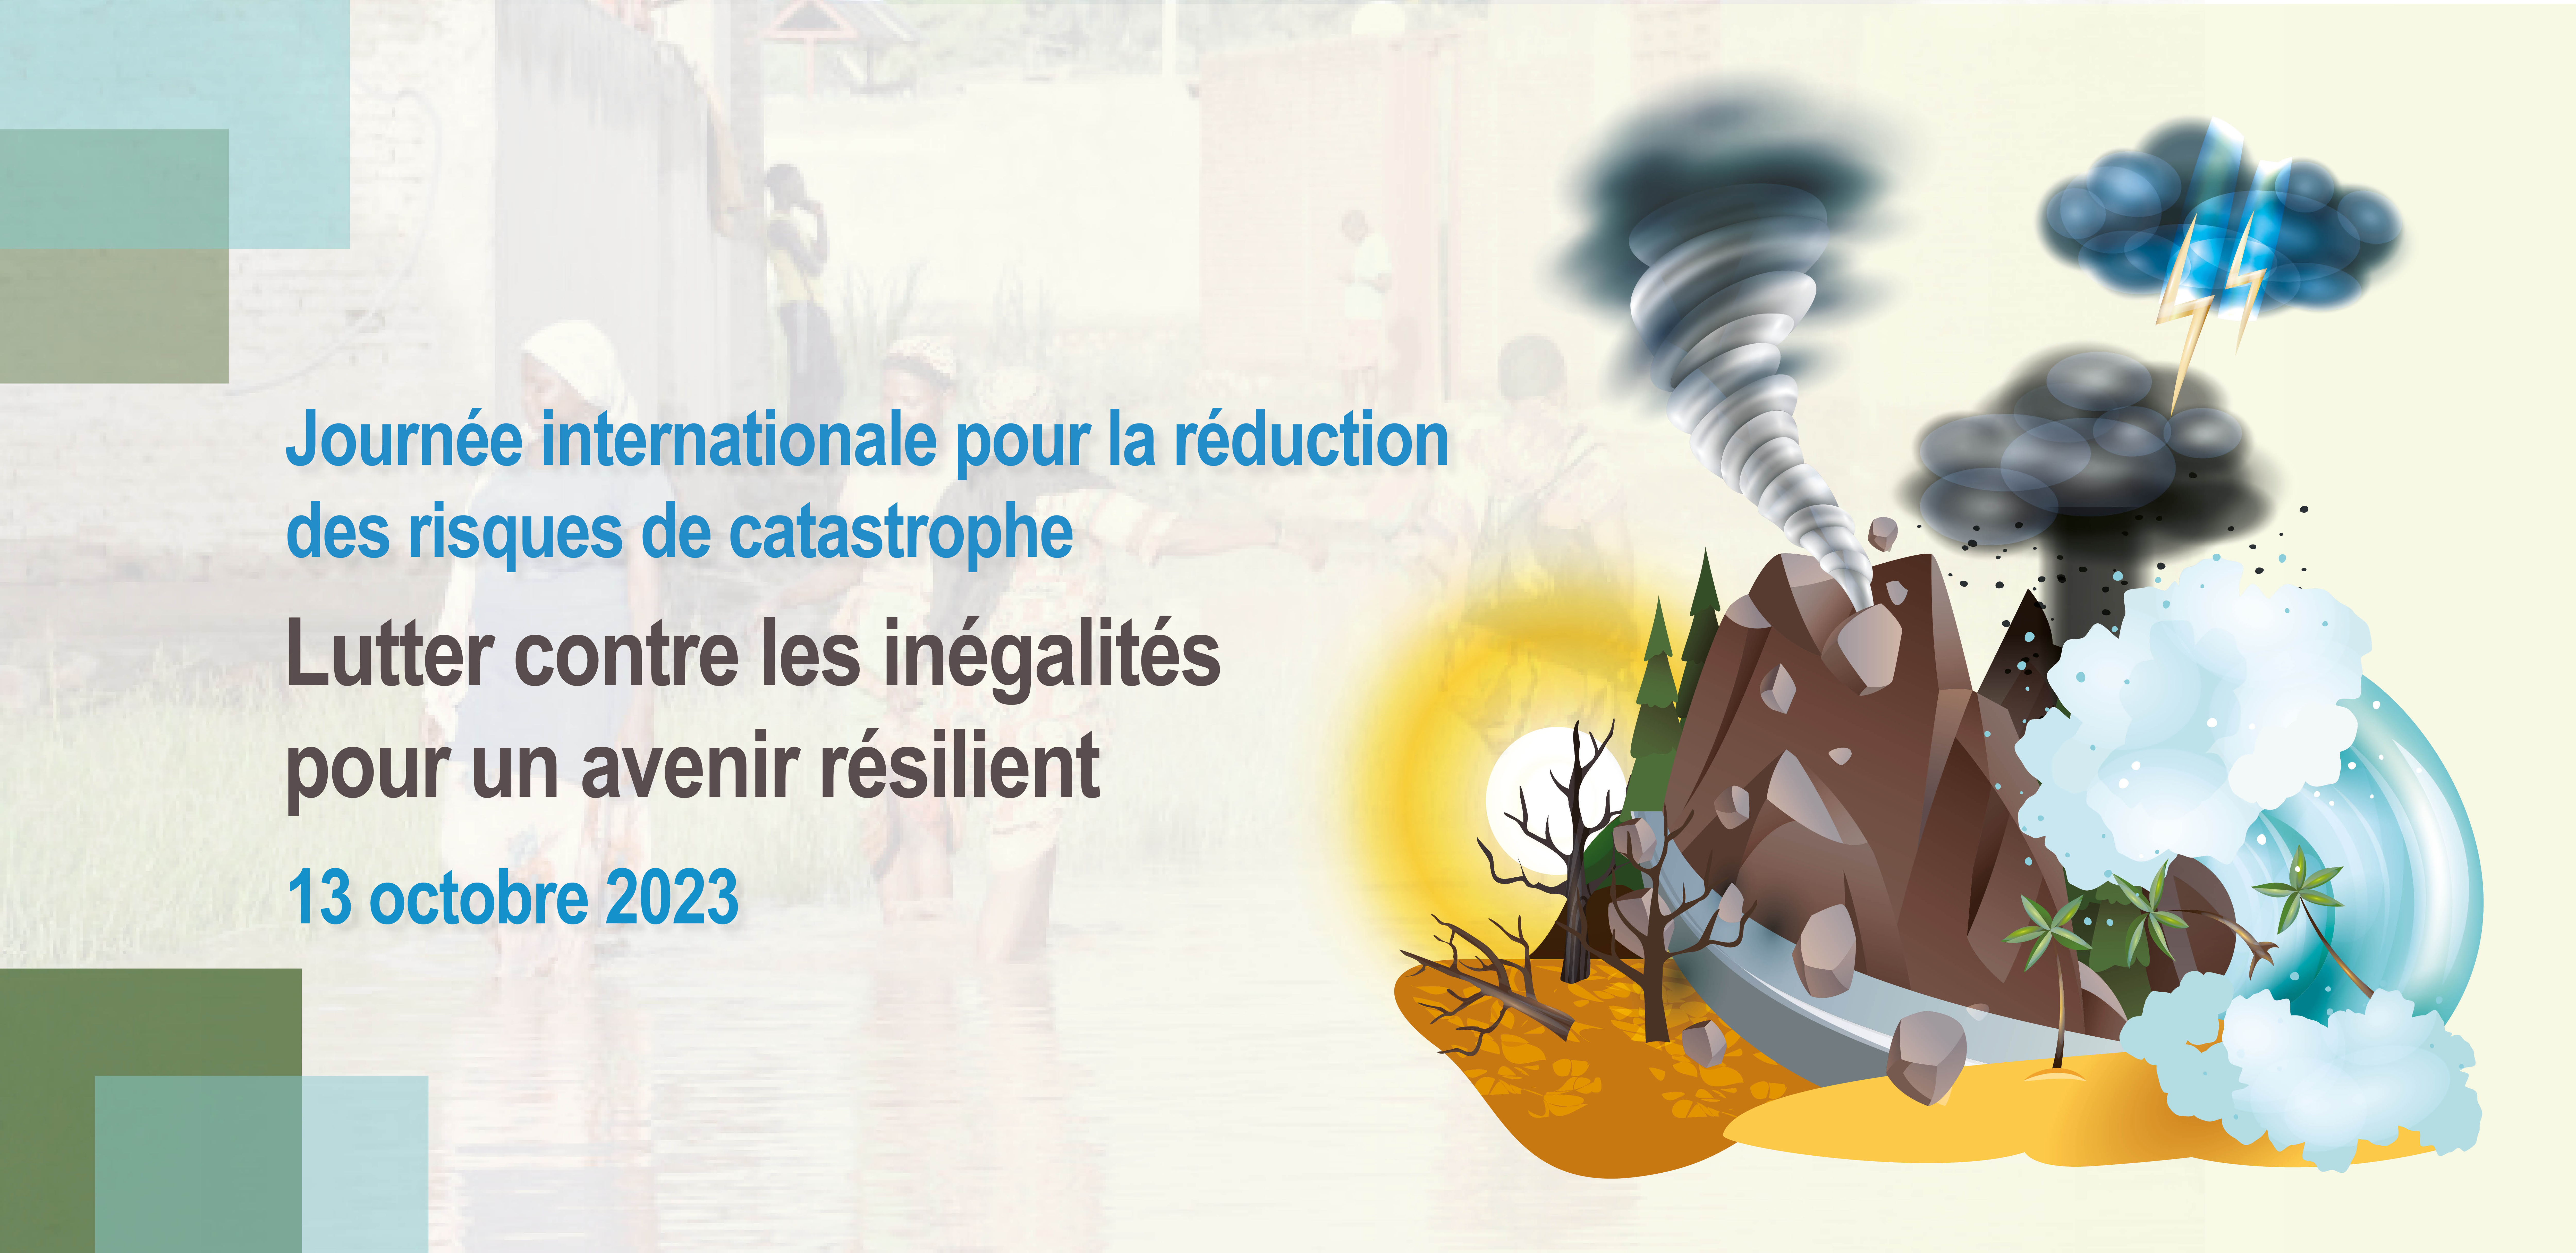 Journée internationale pour la réduction des risques de catastrophes - Lutter contre les inégalités pour un avenir résilient, 13 octobre 2023